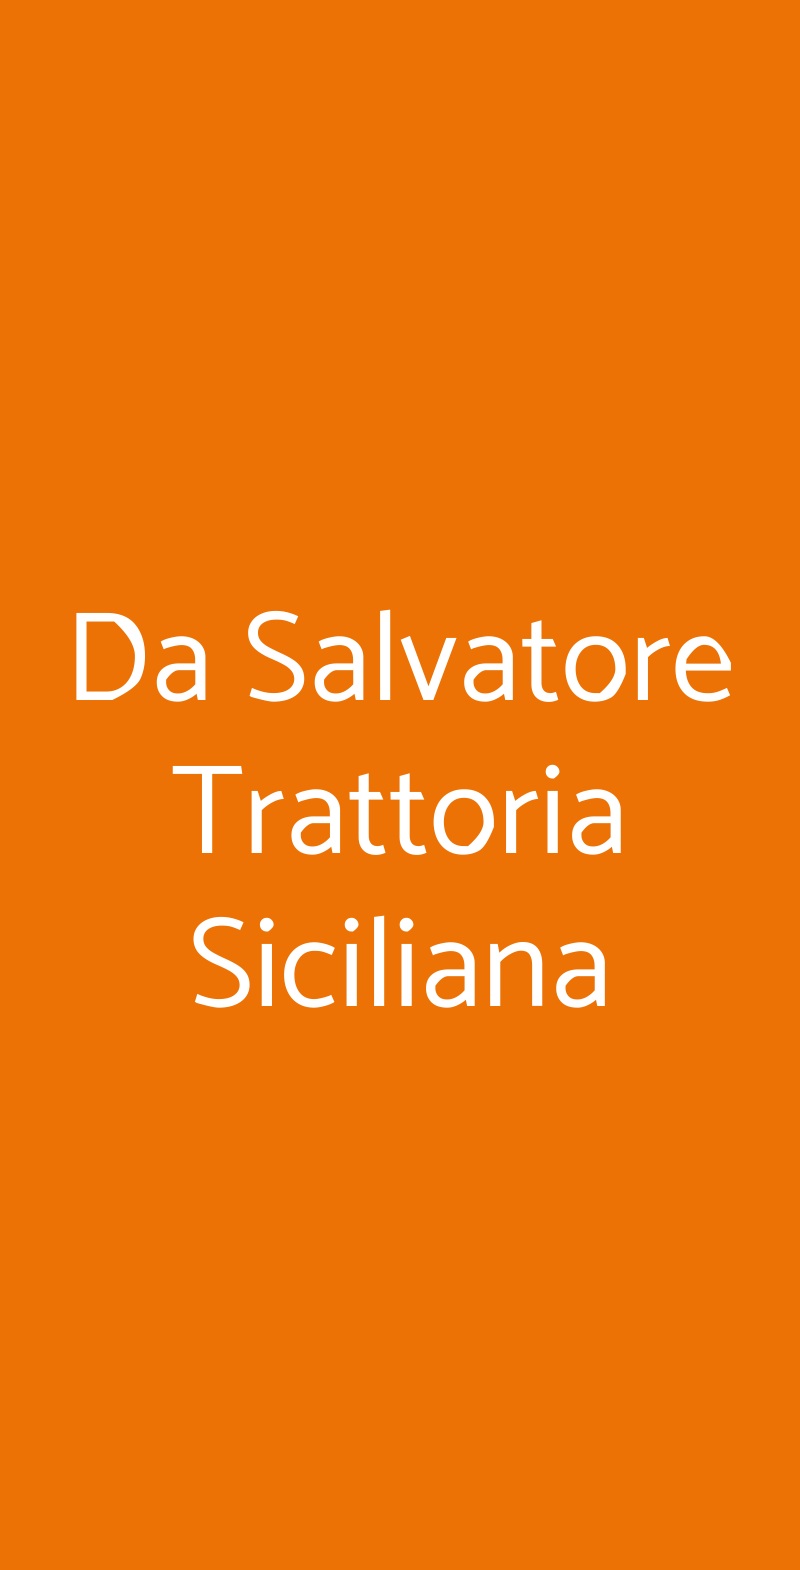 Da Salvatore Trattoria Siciliana Milano menù 1 pagina